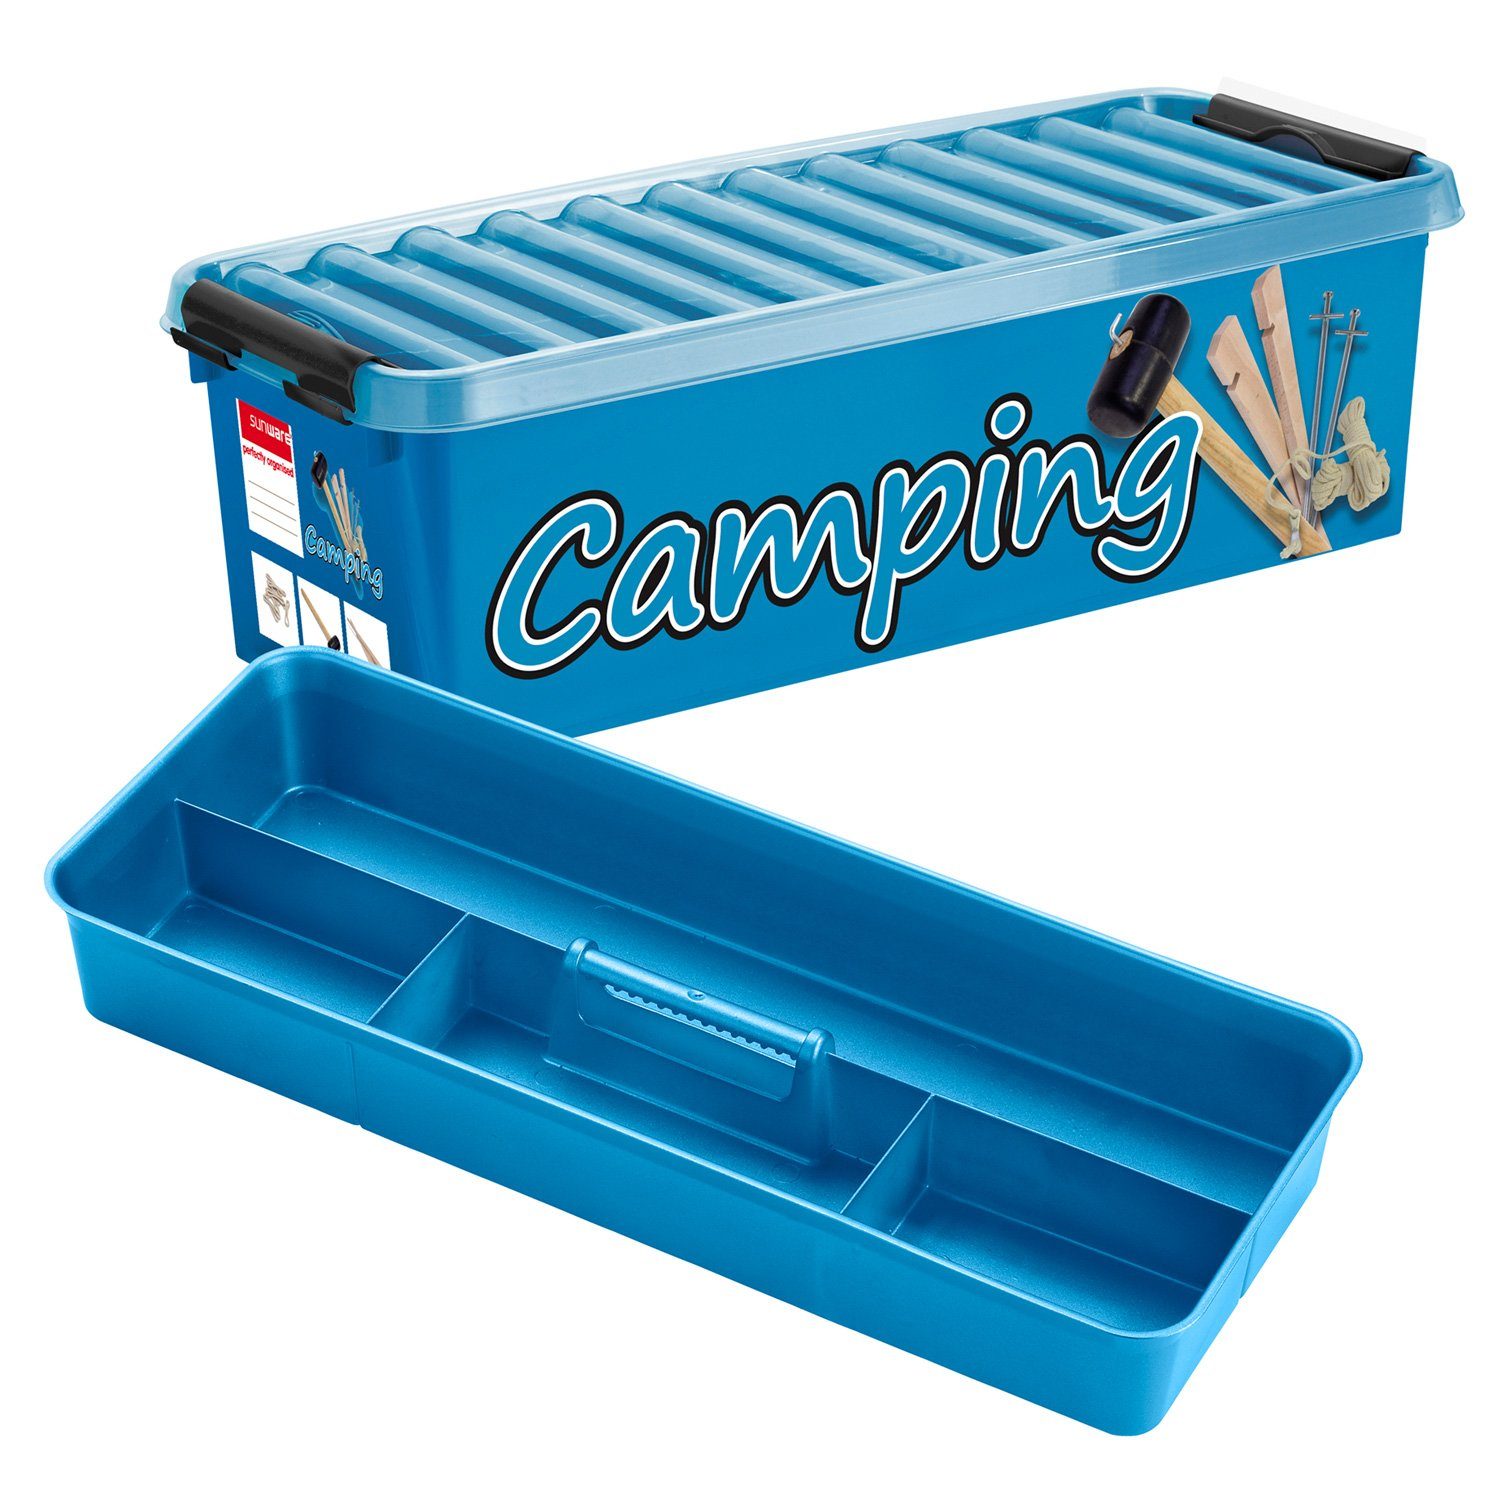 Camping box. Folding Storage Box Camping.